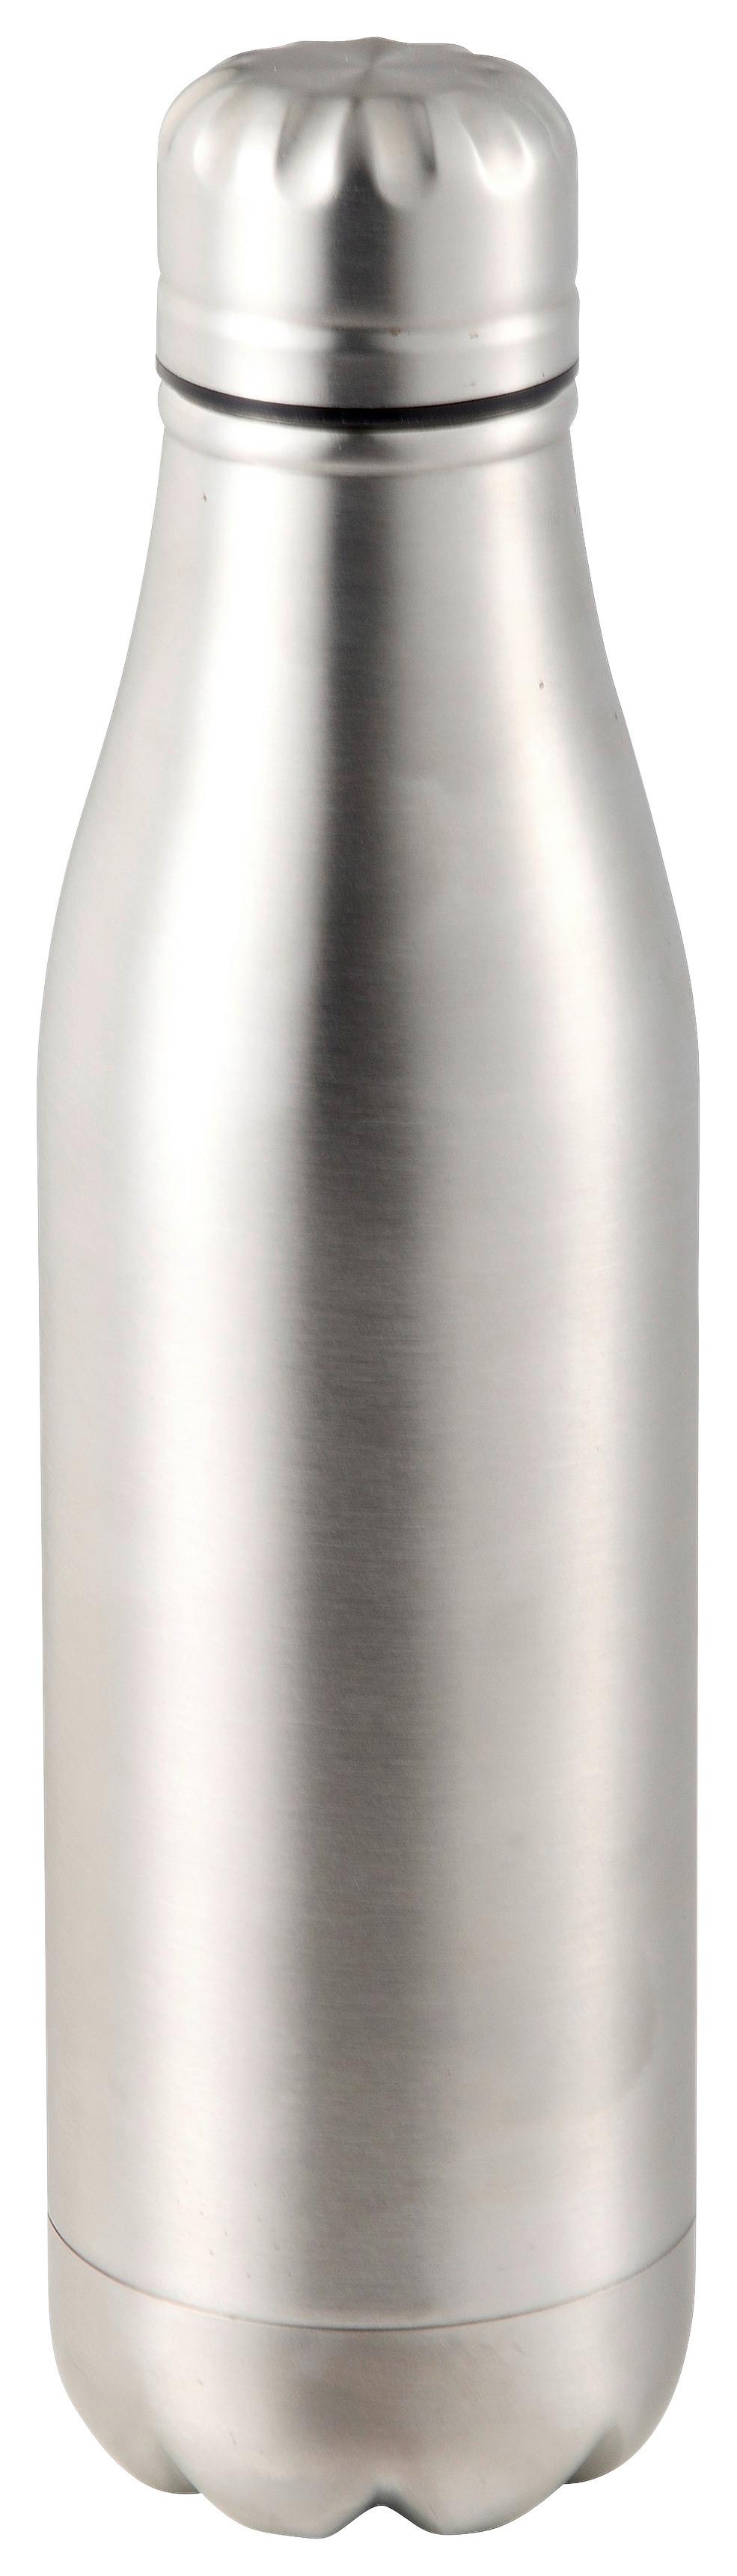 BUTELKA TERMICZNA OSCAR - srebrny/czarny, Konventionell, tworzywo sztuczne/metal (7,1/26,6cm) - Modern Living